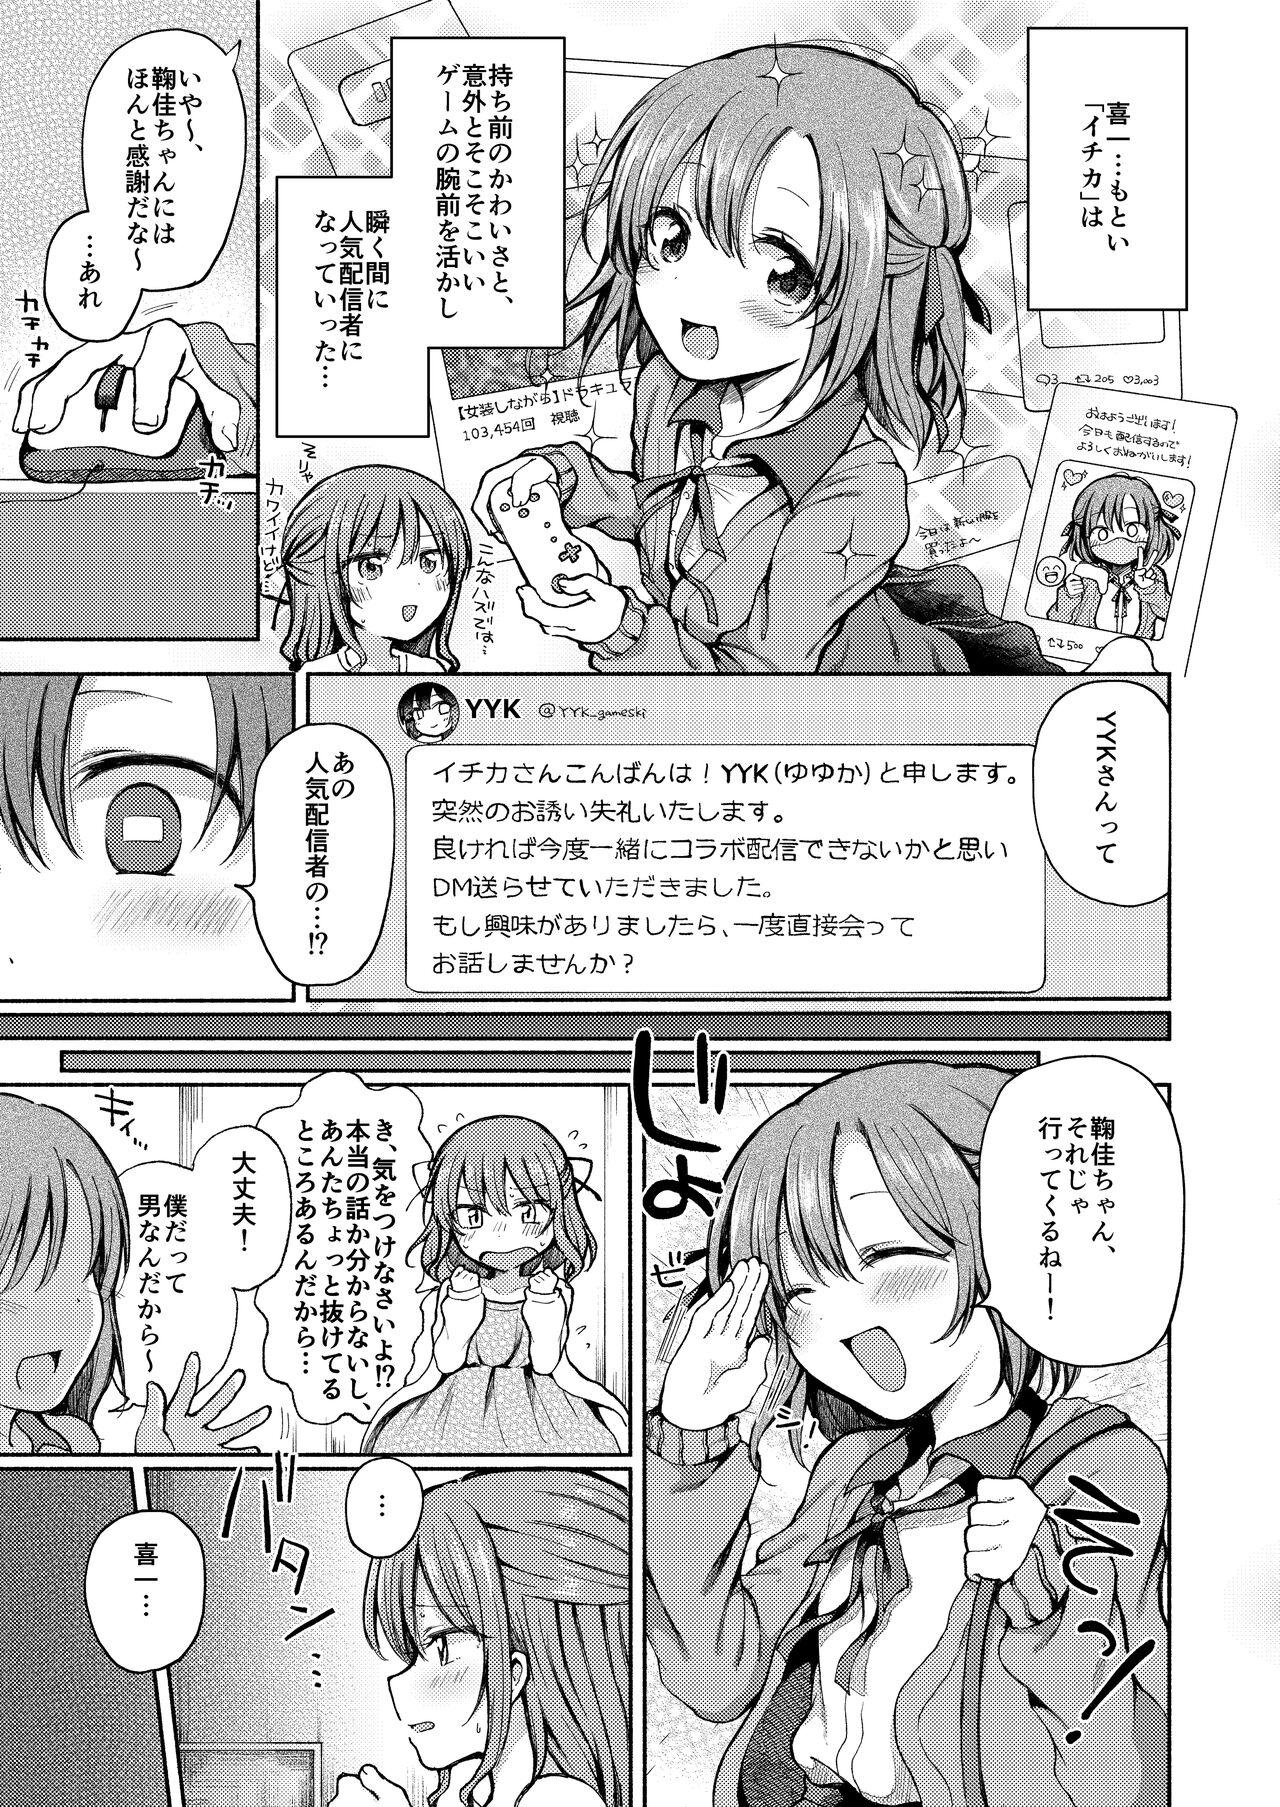 One Osananajimi ni Oshitaosareta Boku wa Kanojo to Mainichi Sex shite iru. - Original Petite Teen - Page 4